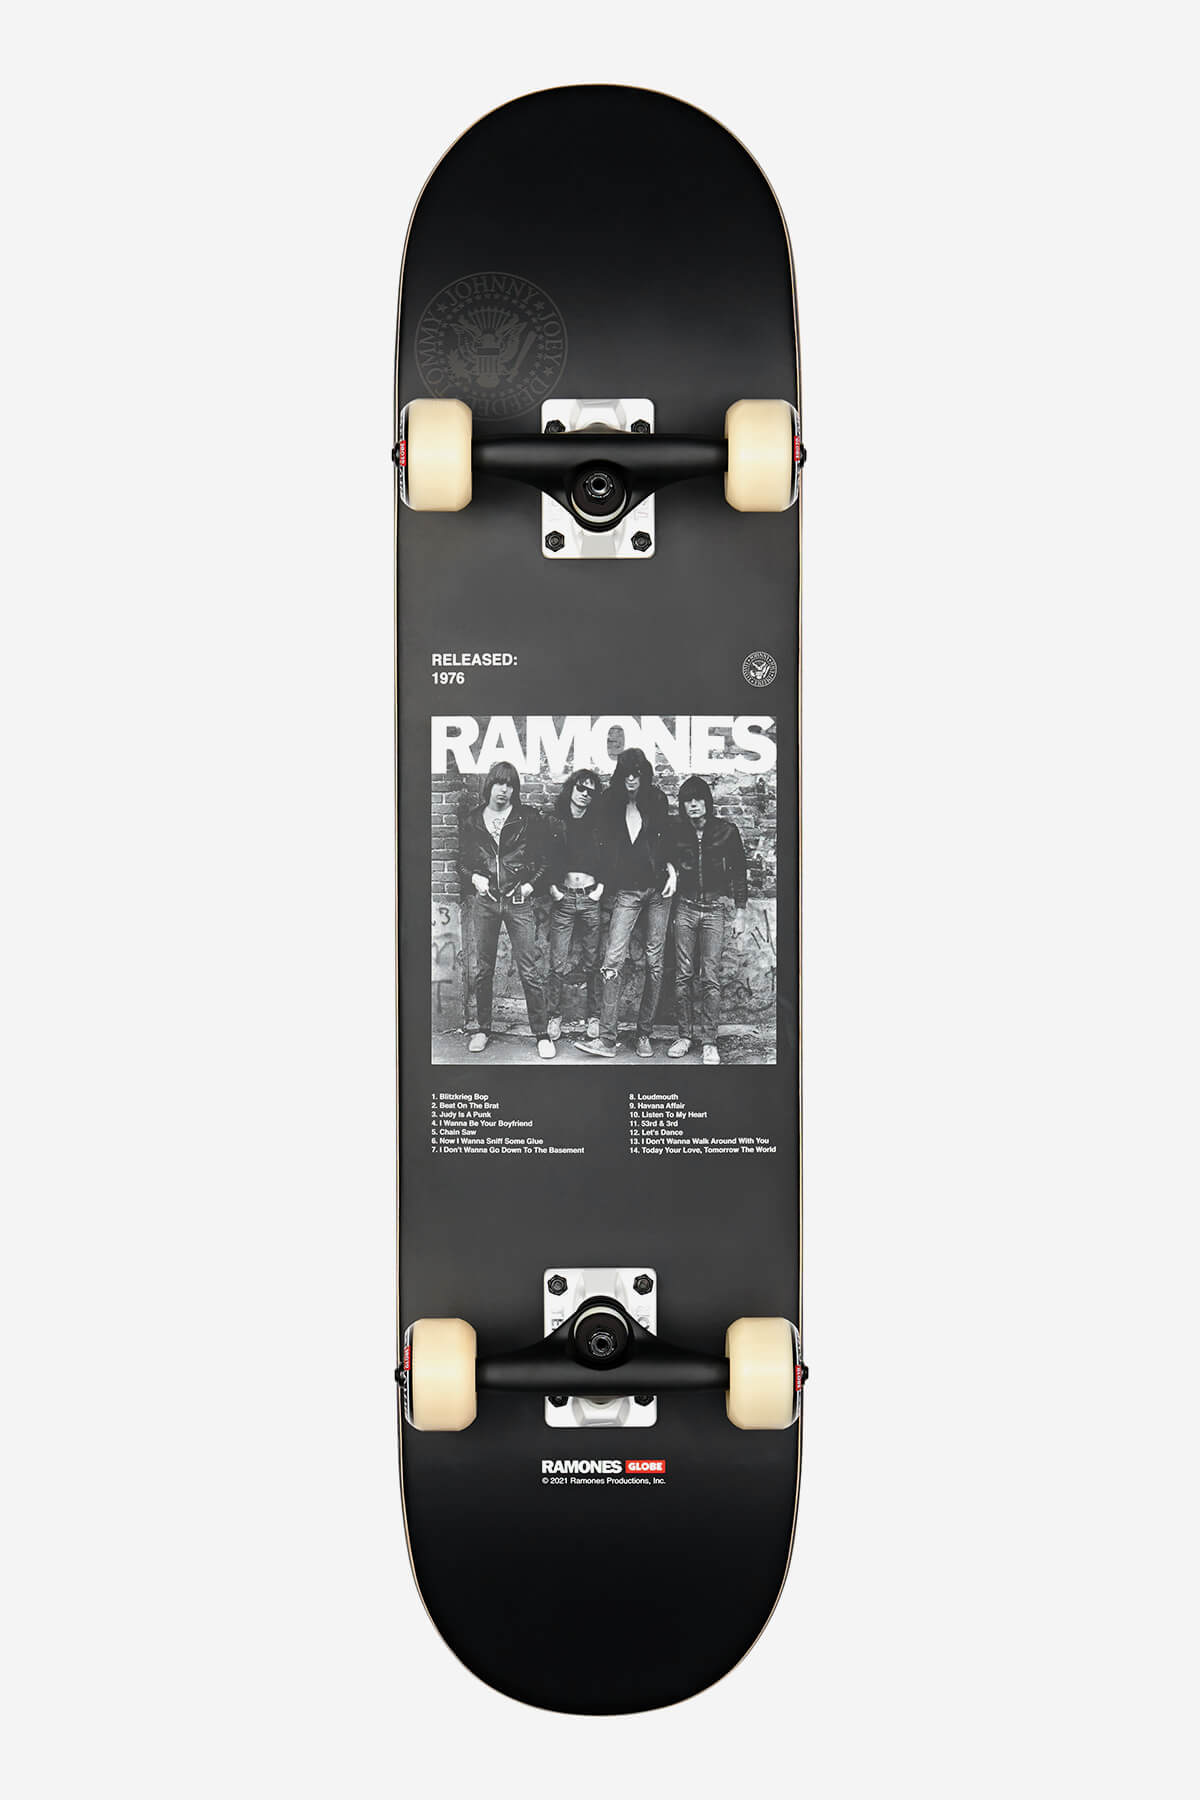 Globe Skateboard completa G2 Ramones - 7,75" Completo Skateboard in RAMONES